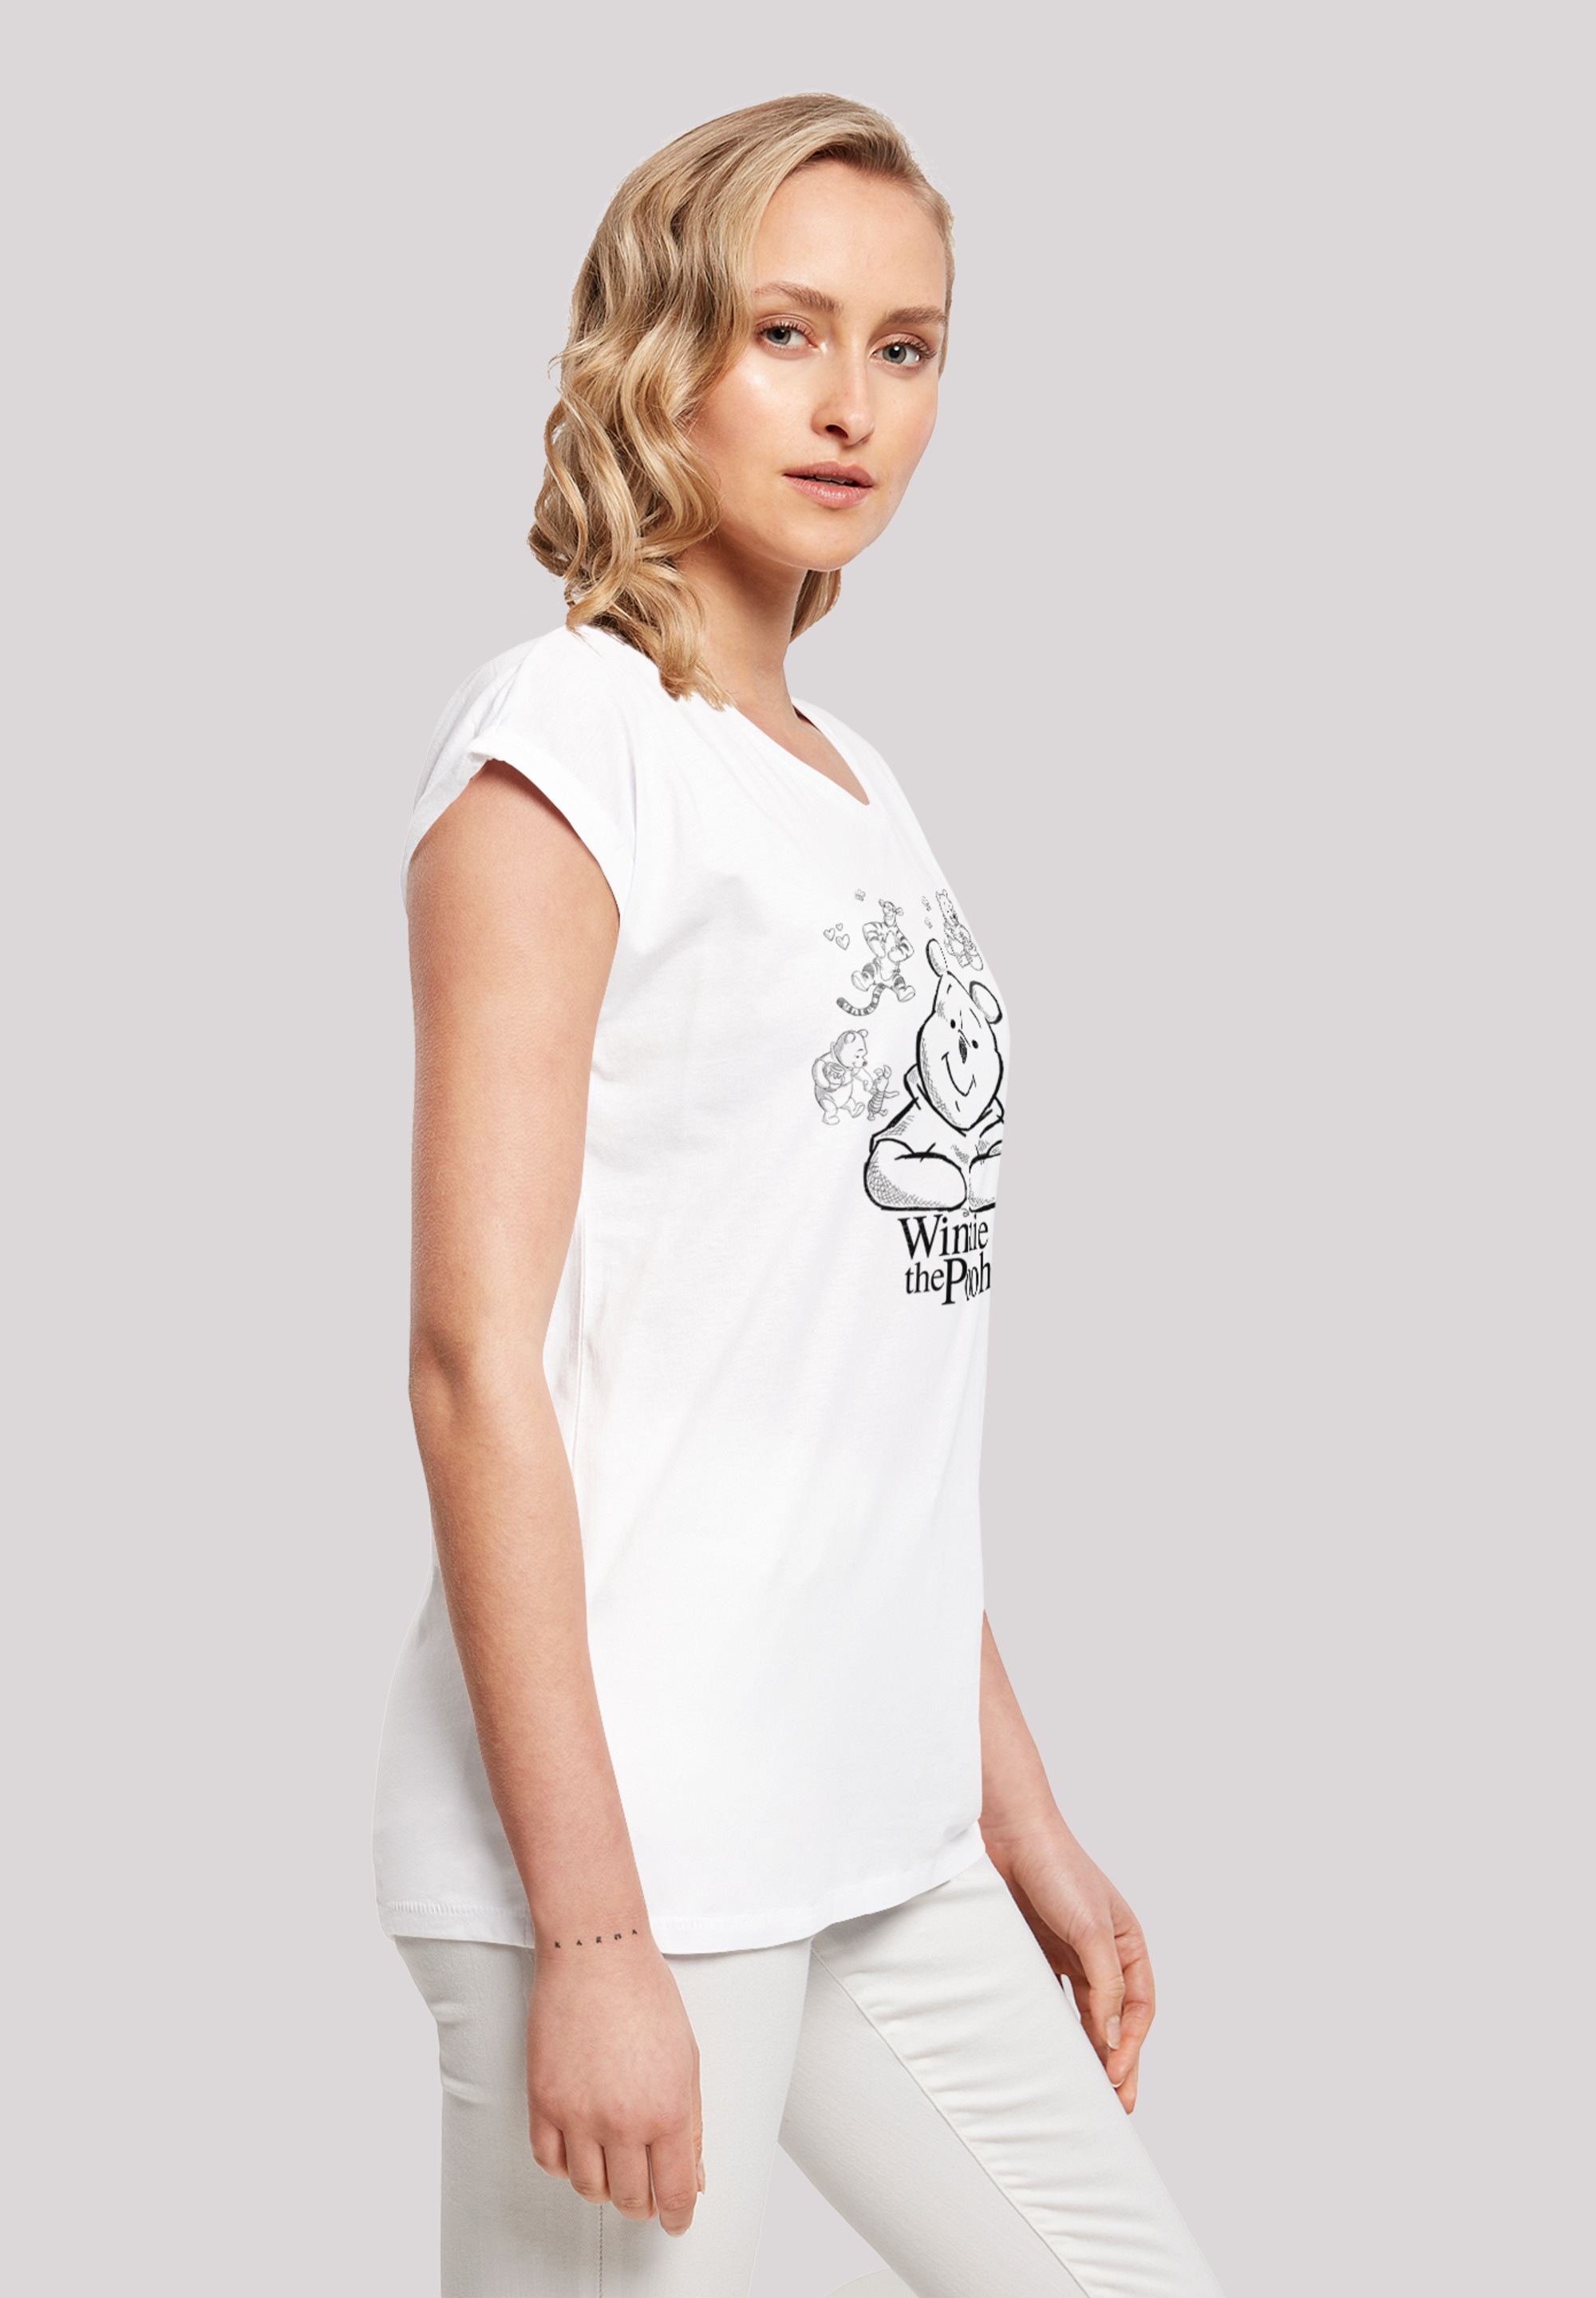 F4NT4STIC T-Shirt »Winnie Puuh Der Bär Collage Sketch«, Print kaufen